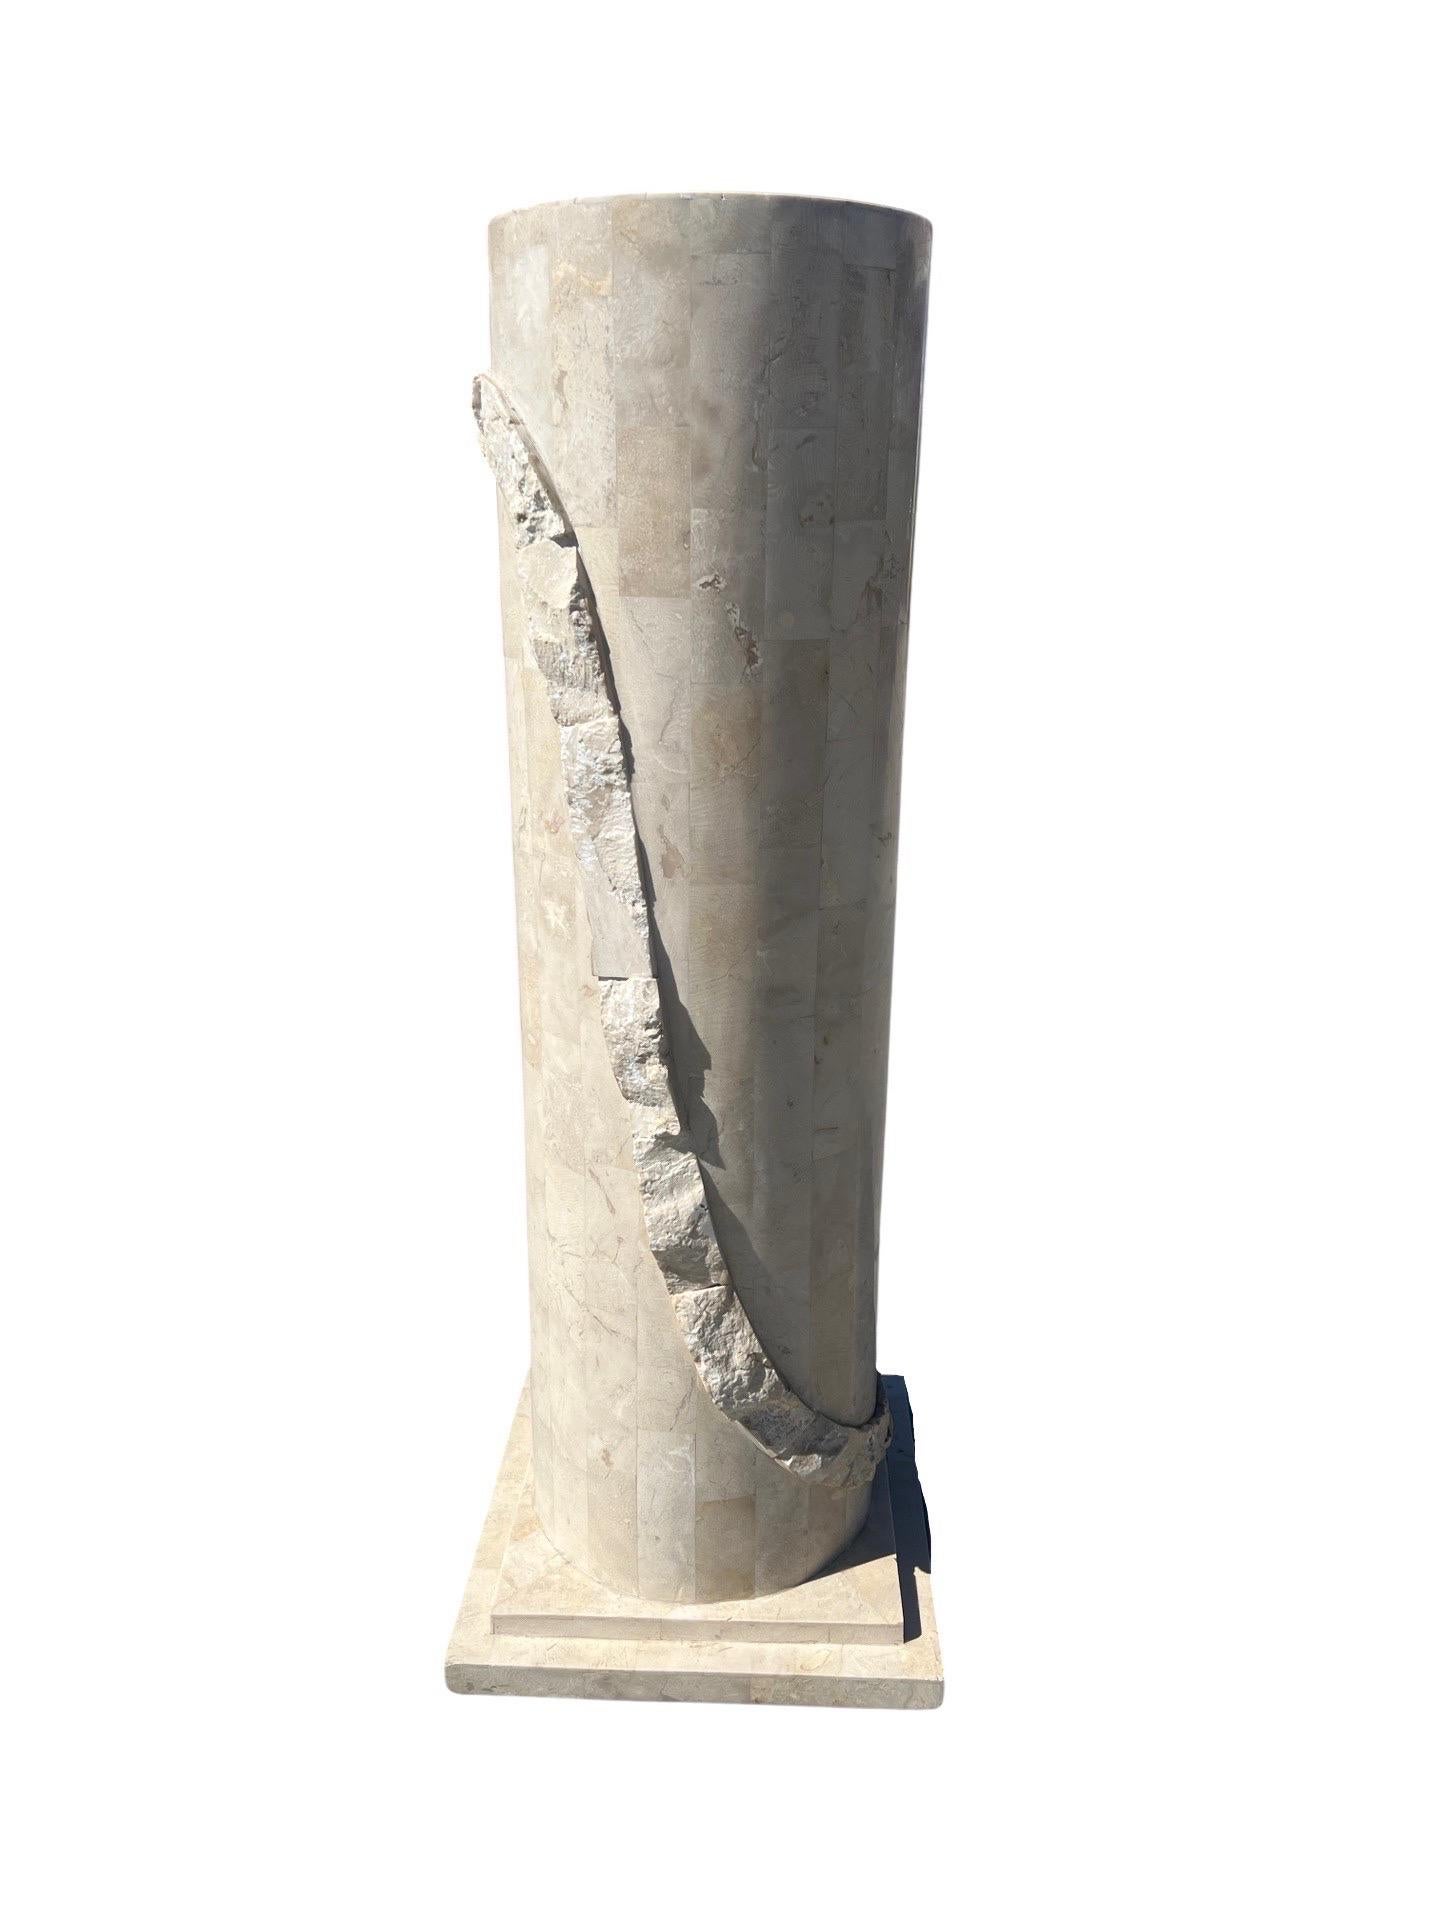 Zuschreibung an Maitland Smith, Mitte des Jahrhunderts.

Ein postmoderner, mosaikartiger Steinsockel, der aus einem rechteckigen Steinkörper besteht und mit einem Kranz aus grob geschliffenem Stein und einem abgestuften Sockel versehen ist.